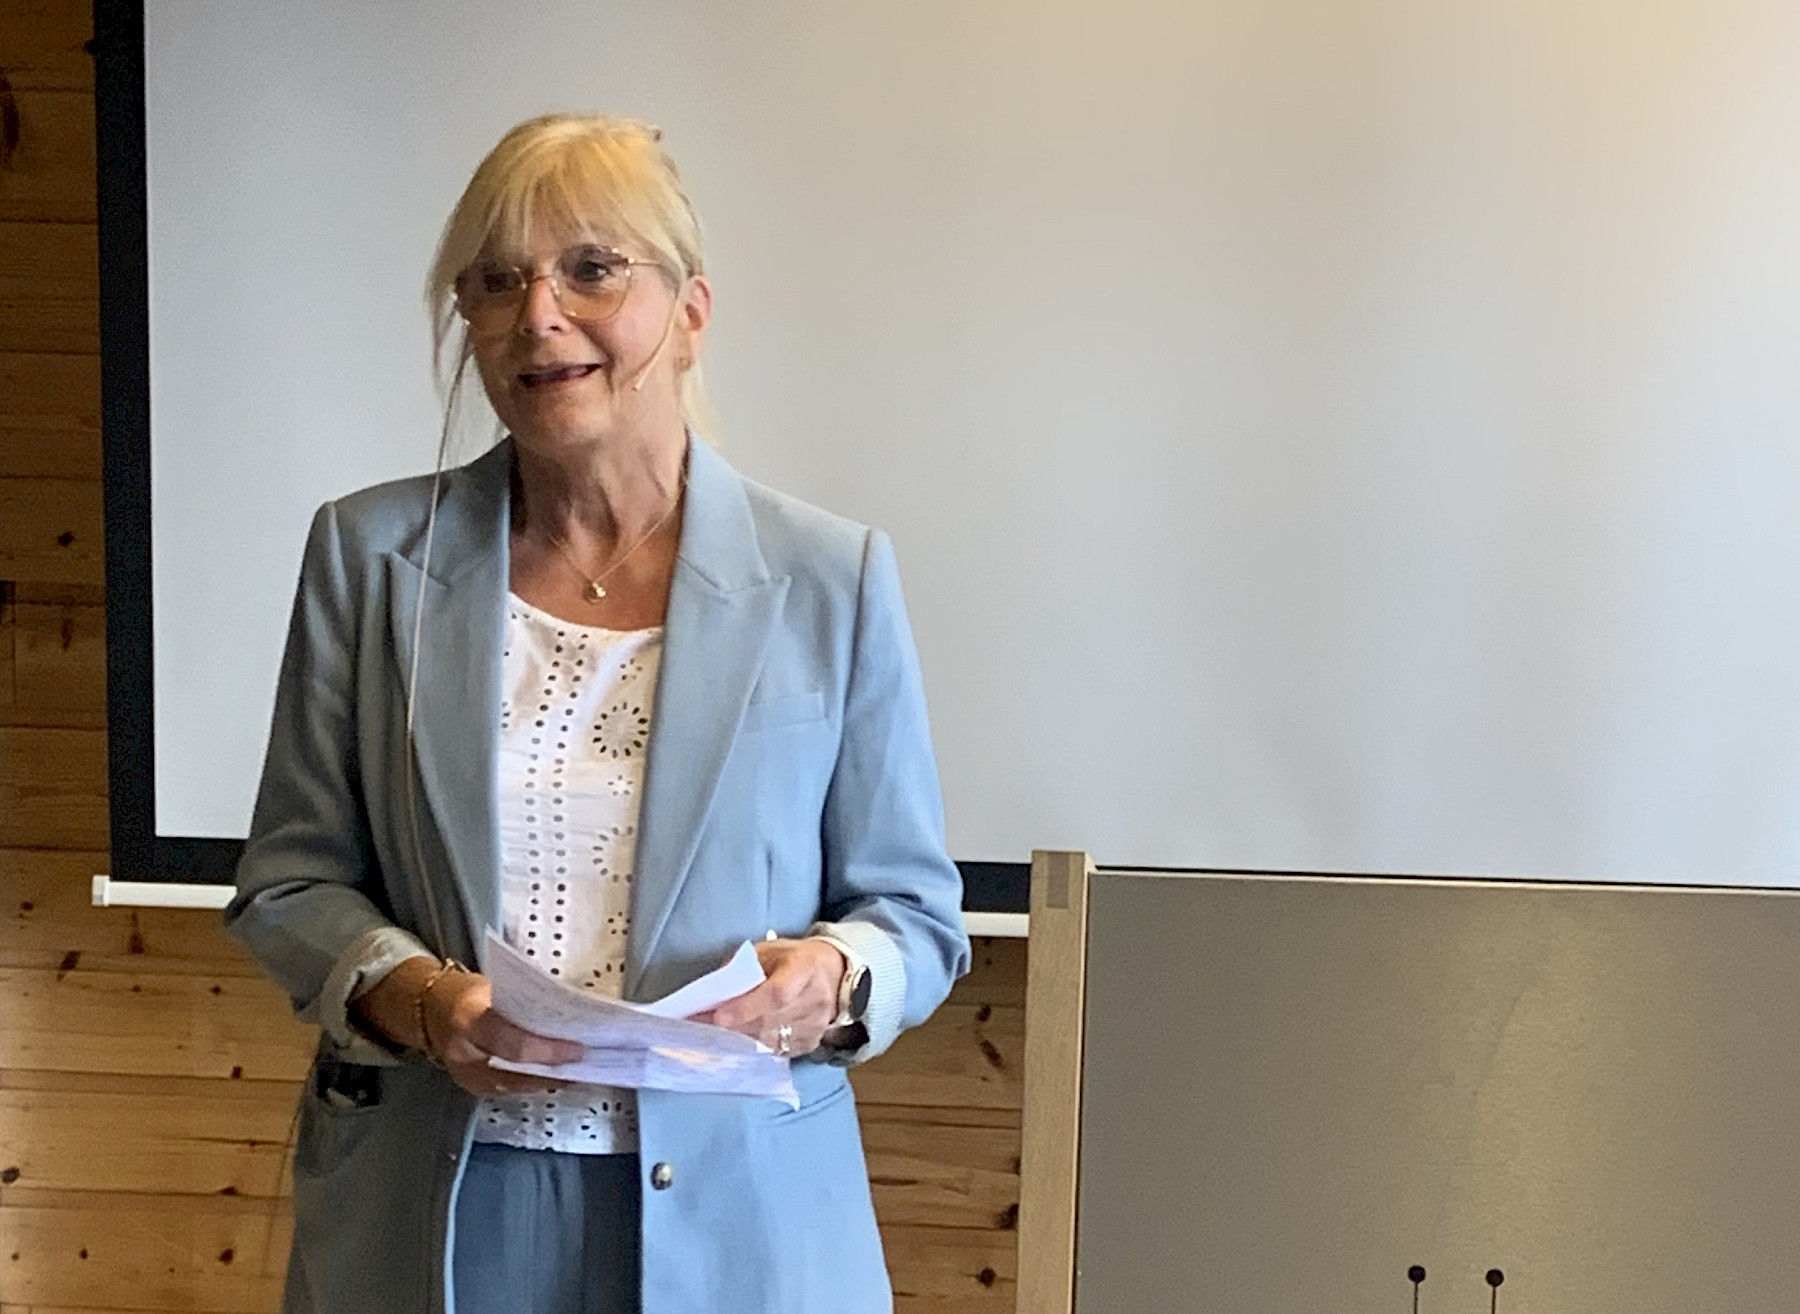 Leder for fagskolens styre Solveig Kopperstad Bratseth deler sine visjoner og engasjement under sin tale